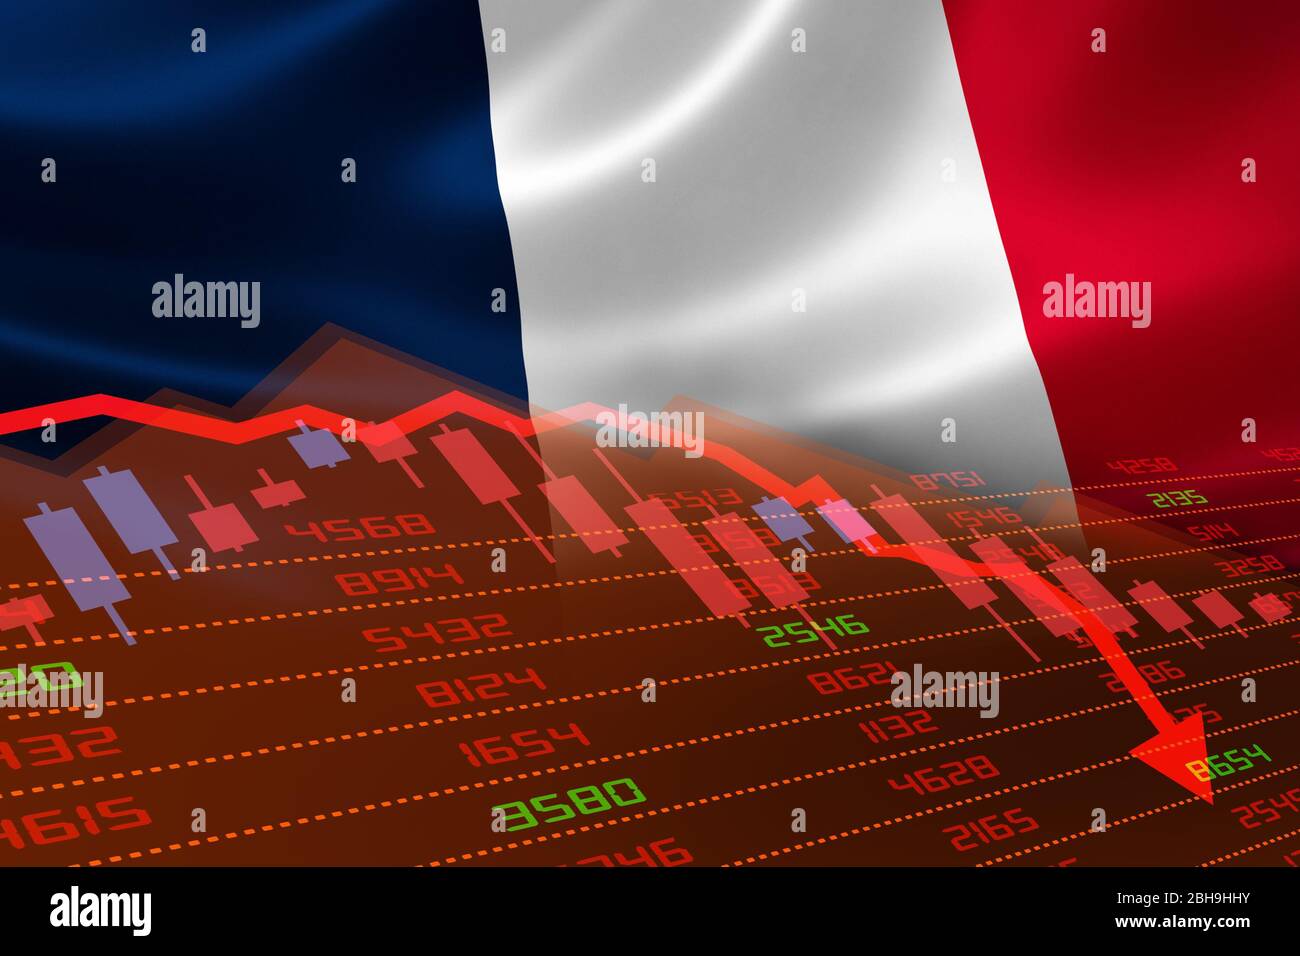 La Francia ha una flessione economica con il mercato azionario che mostra il grafico in basso e in territorio rosso negativo. Crisi del mercato monetario economico e finanziario Foto Stock